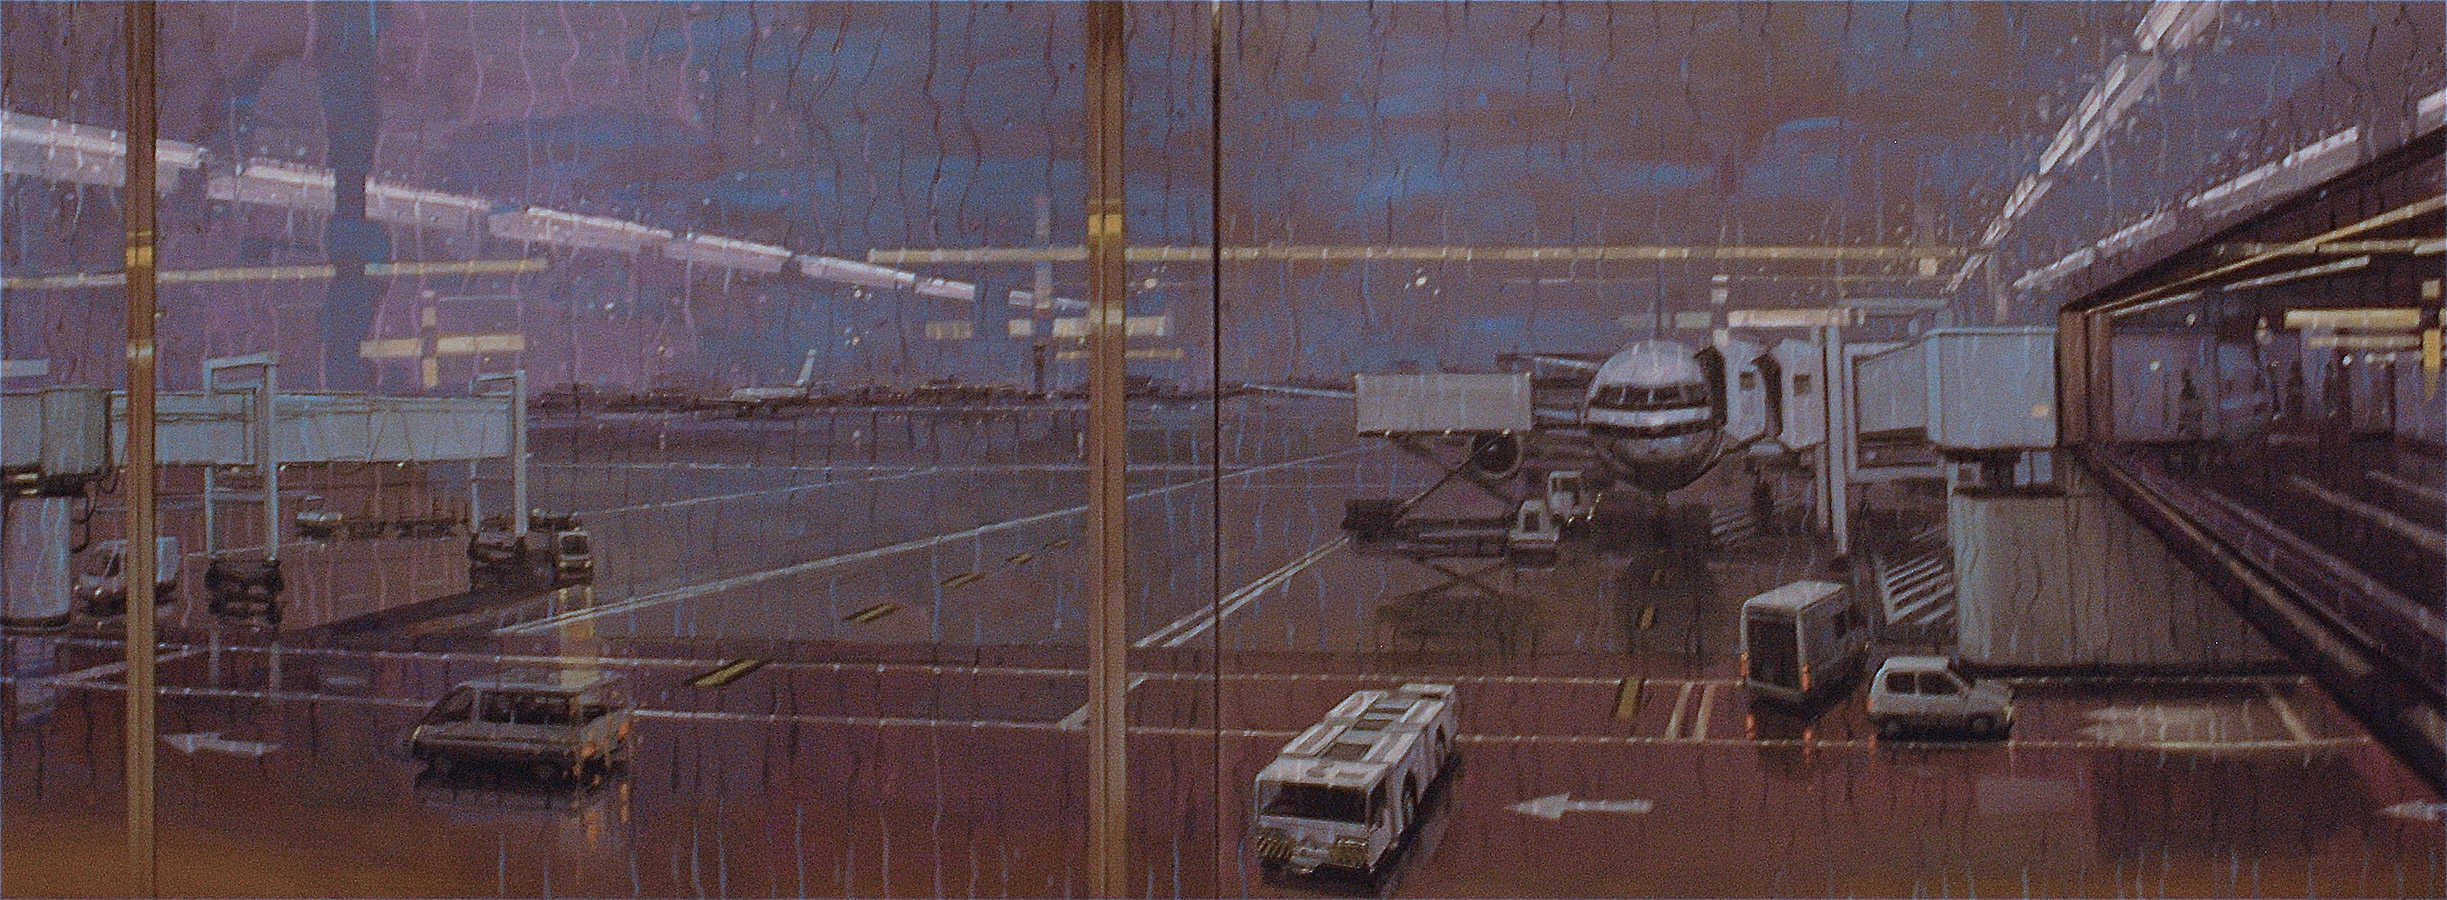 Pluies. Diptyque, huile sur toile, 97 x 260 cm, 2008